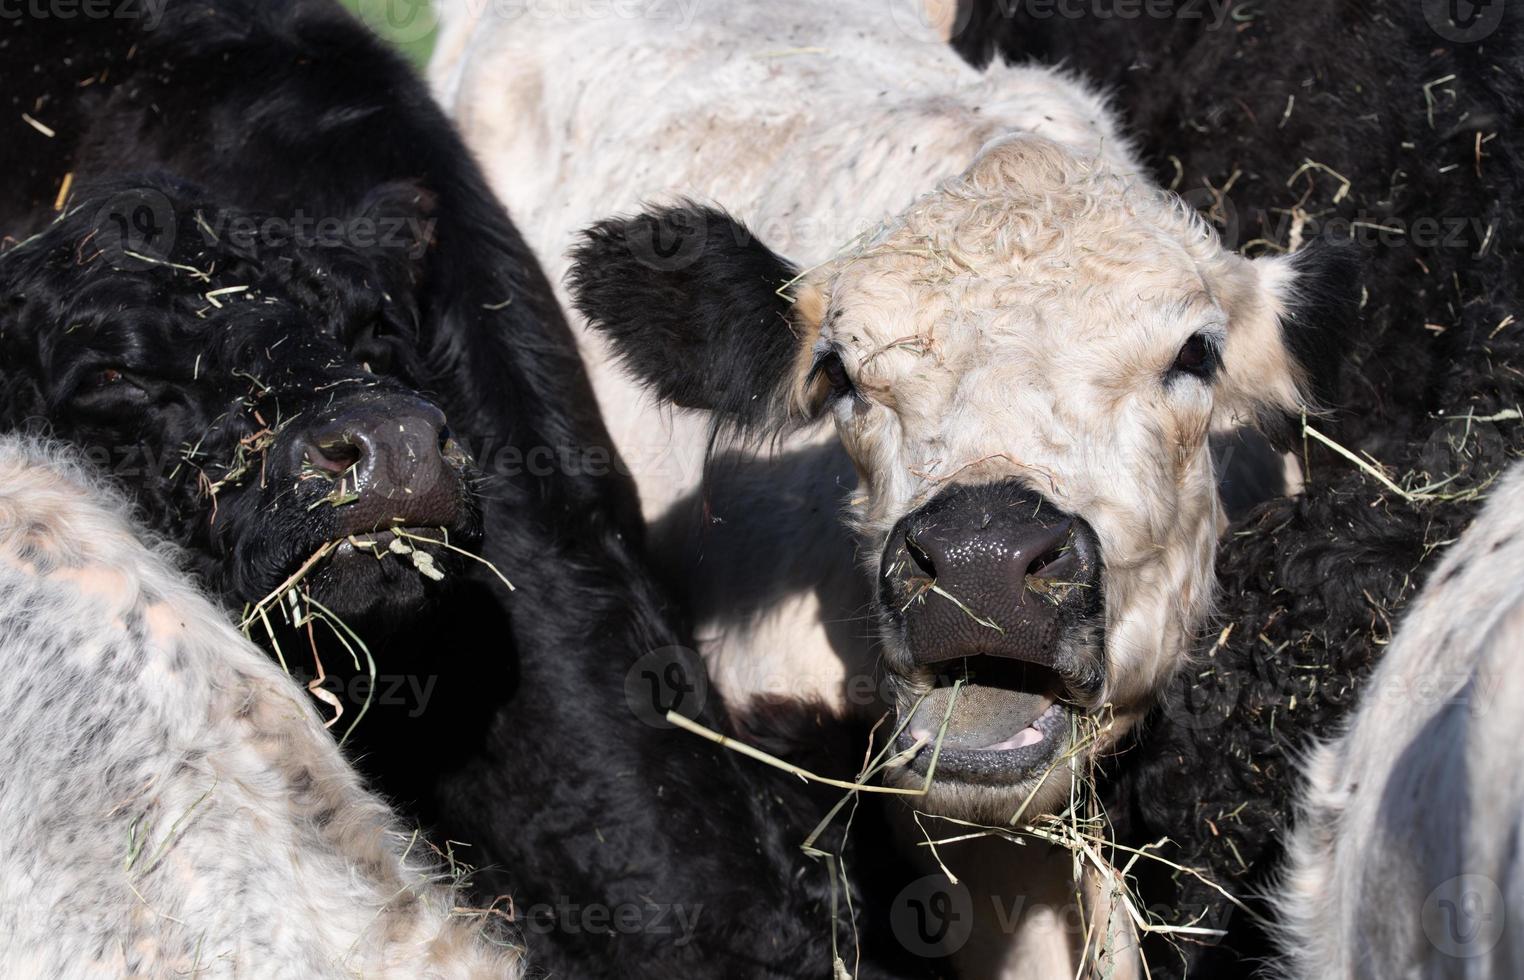 meerdere jong angus vee in zwart en wit staan dichtbij samen. een wit os opent haar mond naar brullen. foto